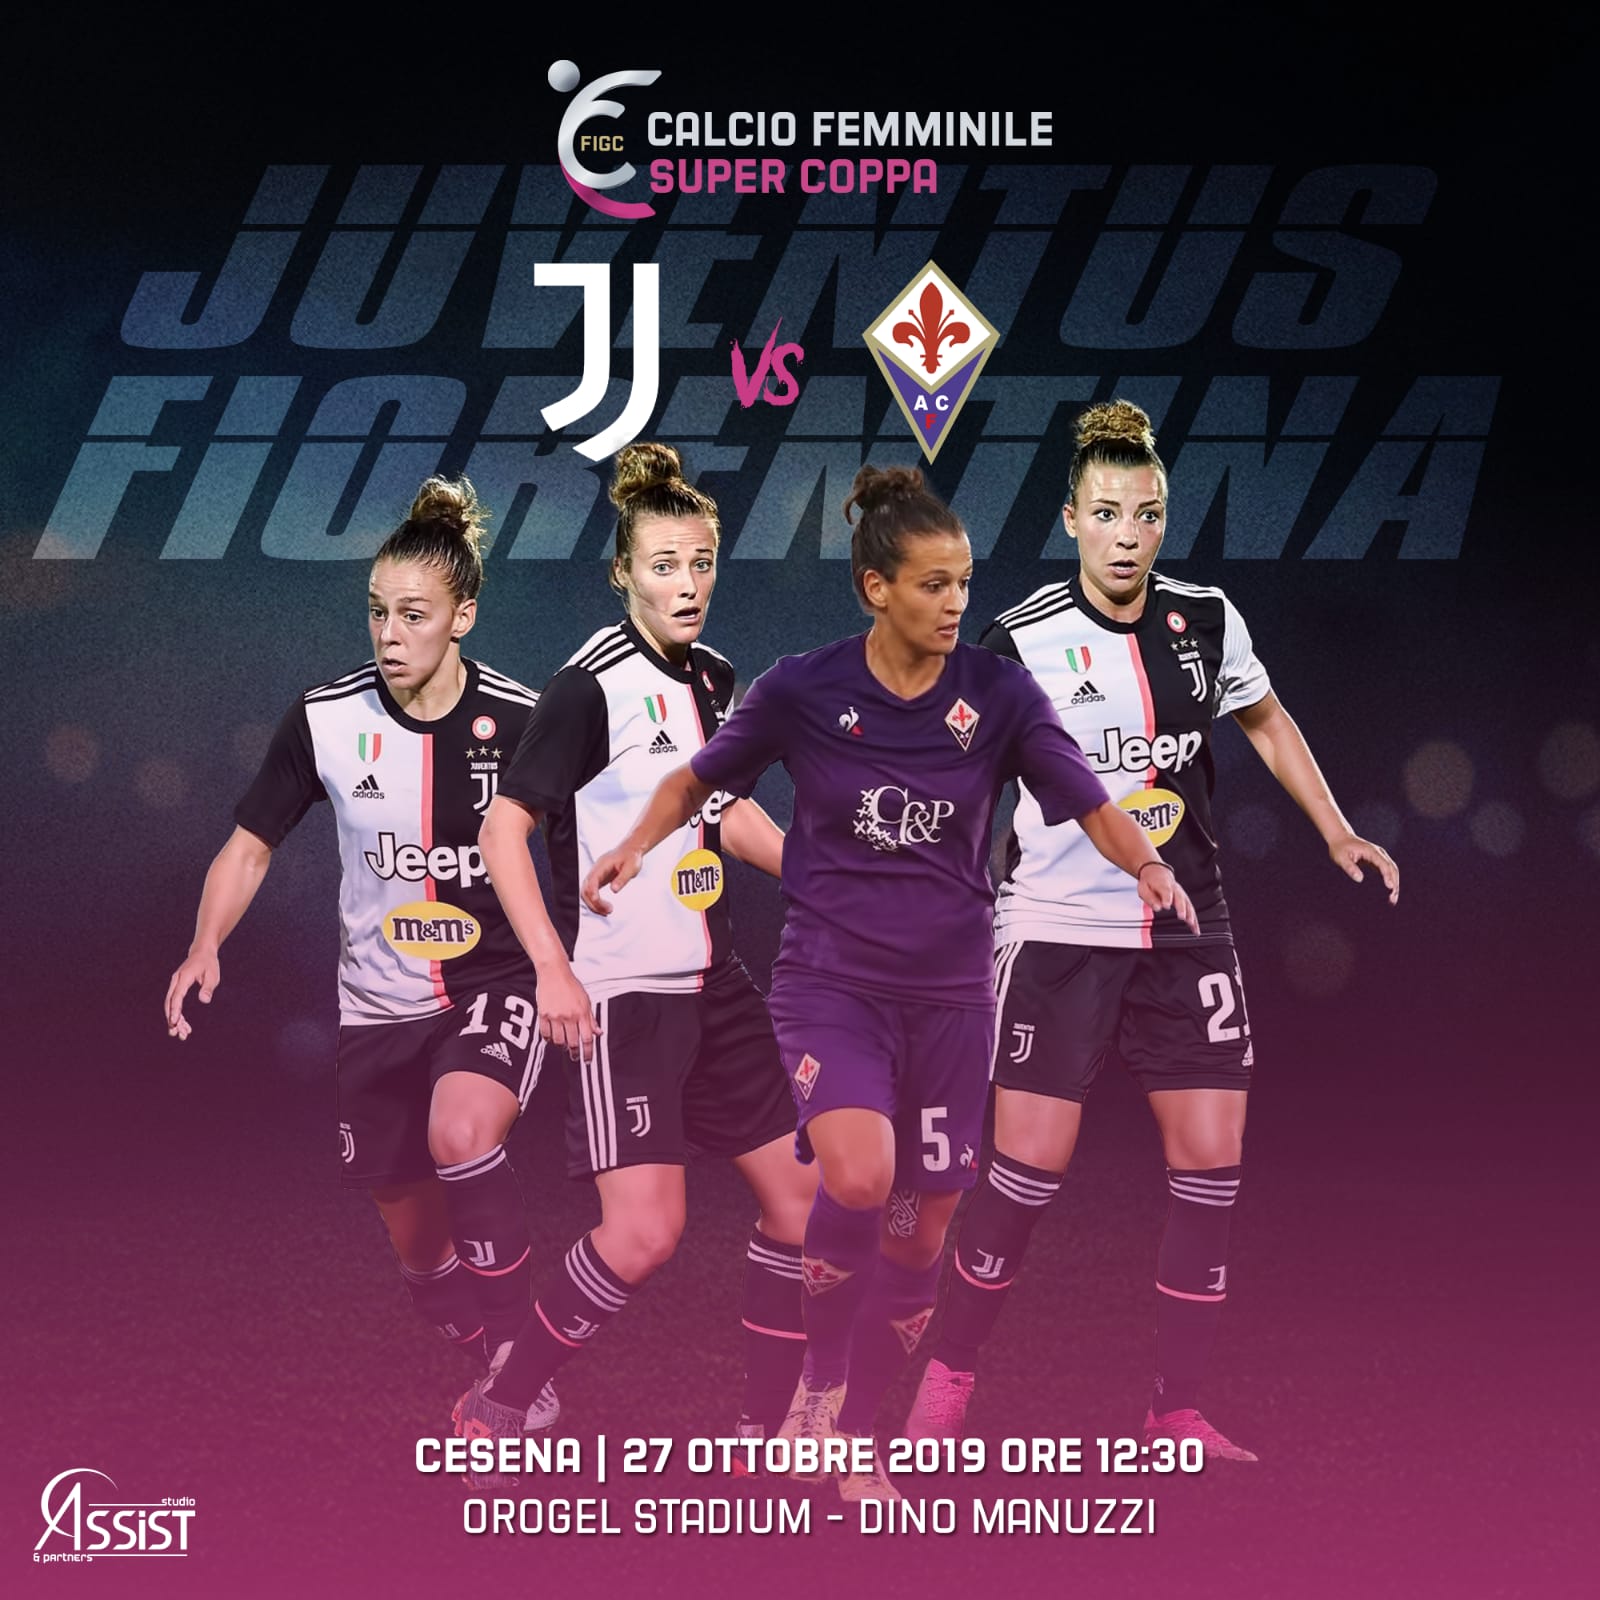 juventus-fiorentina-supercoppia-femminile La Juventus di Boattin, Caruso e Galli contende alla Fiorentina di Tortelli la Supercoppa Femminile